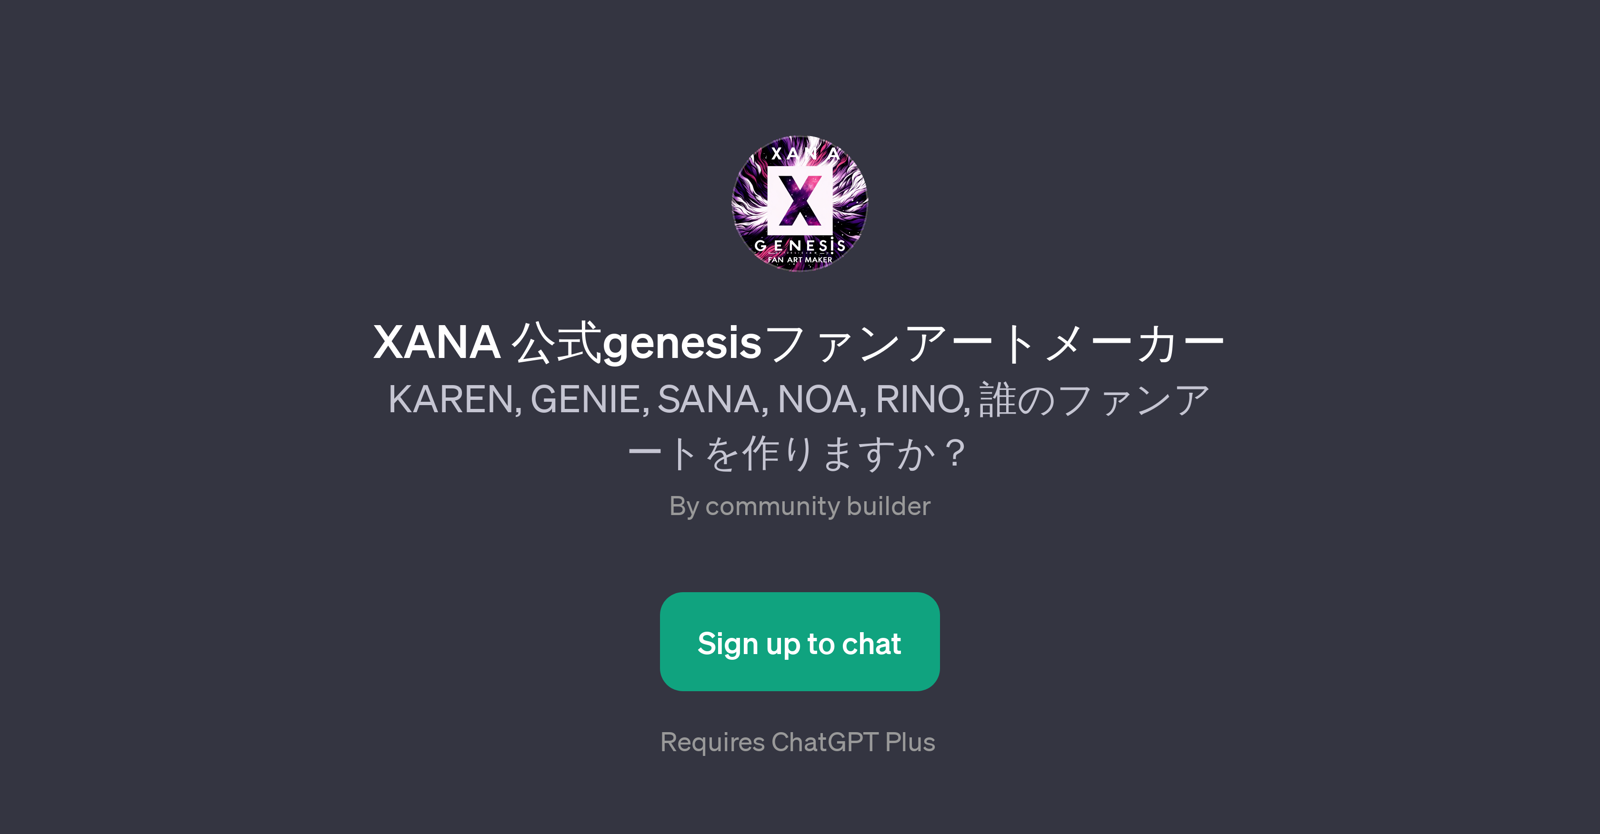 XANA genesis website